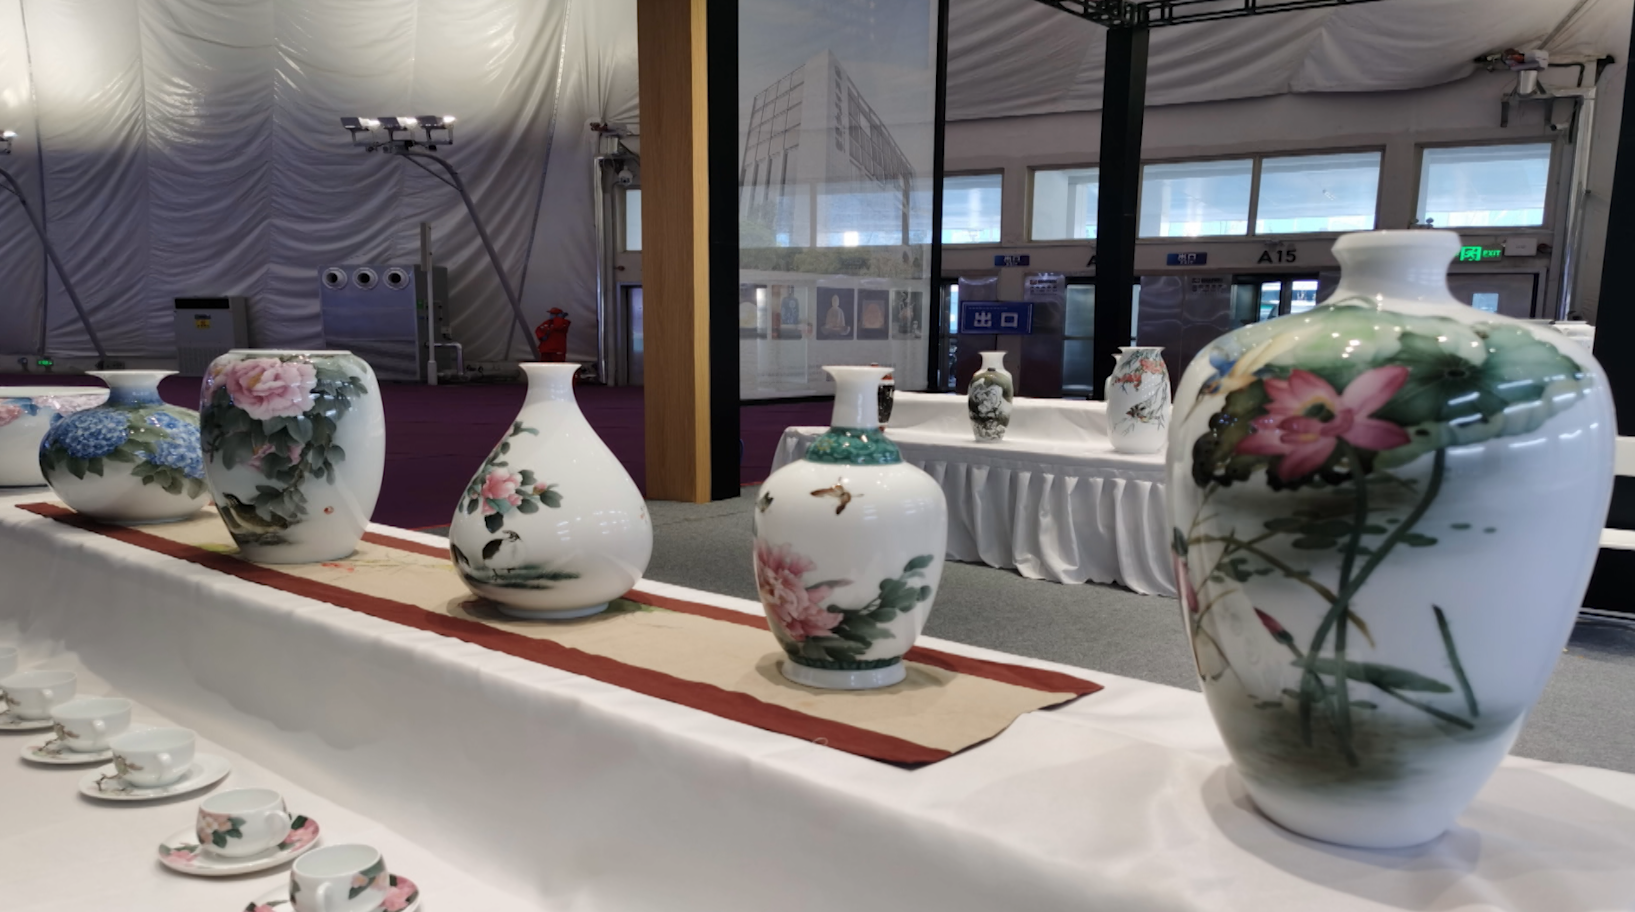 淄博陶瓷博览会图片